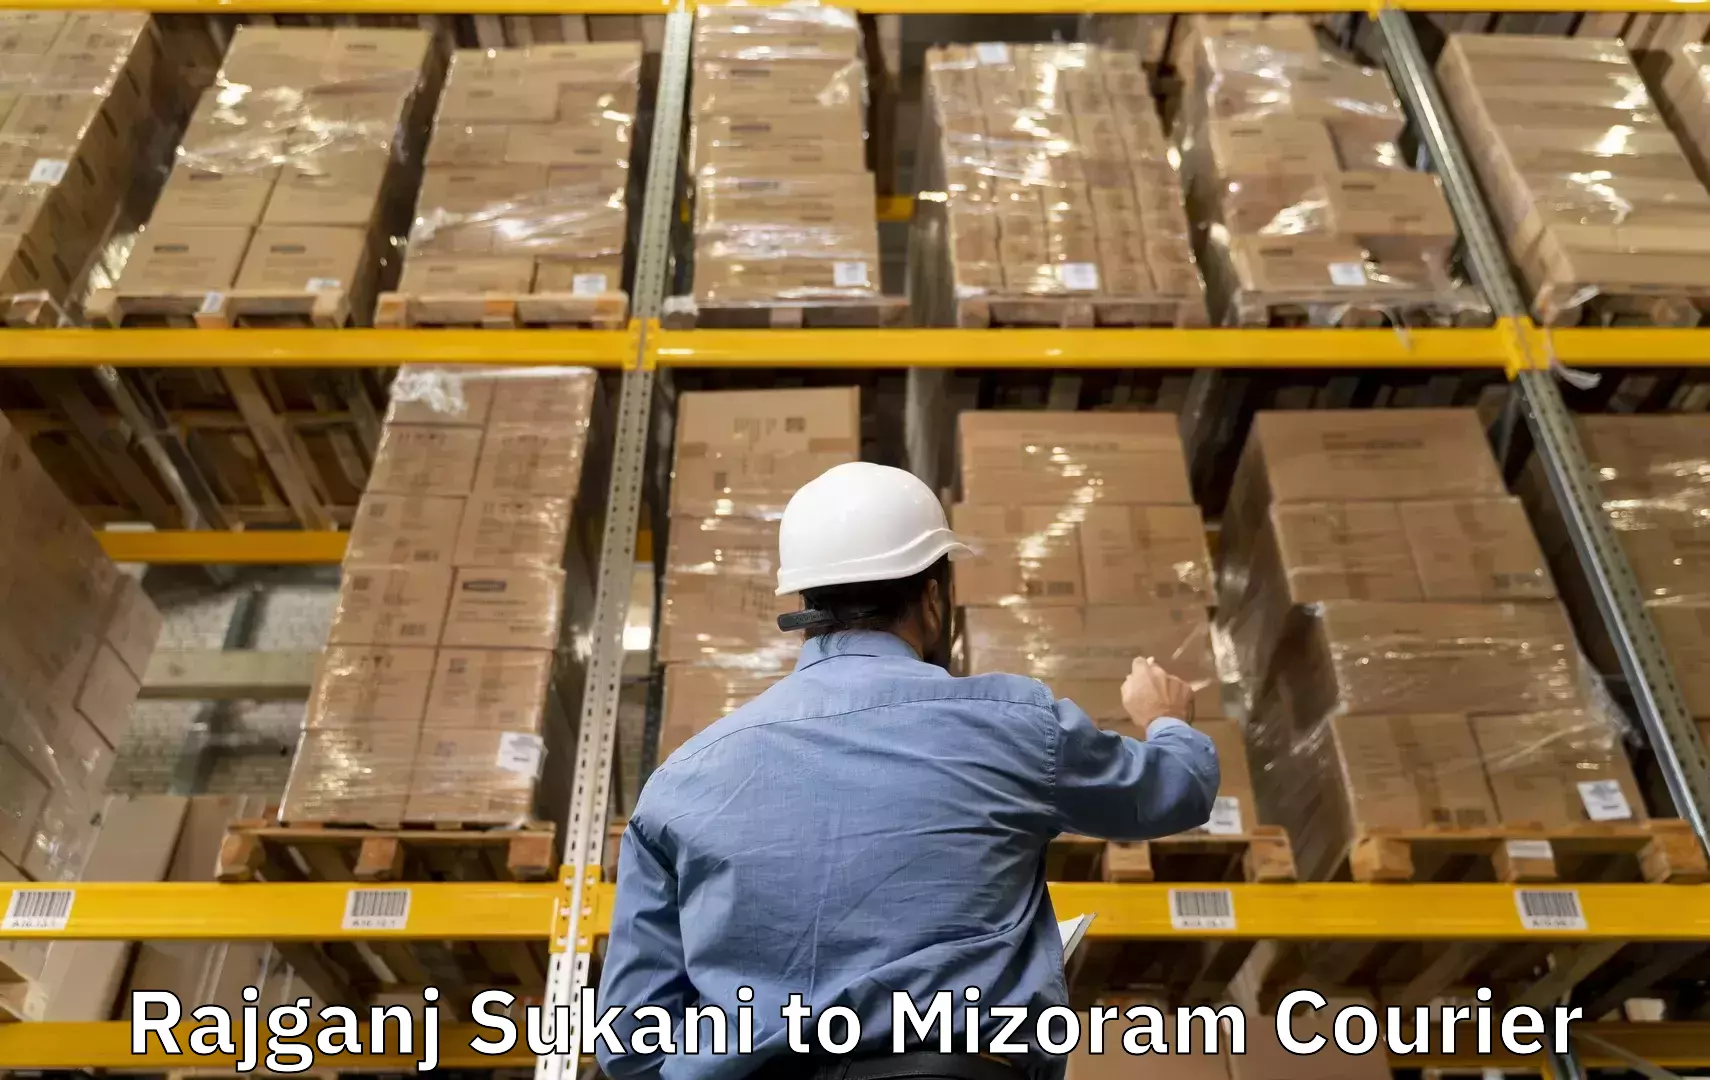 Luggage shipment tracking Rajganj Sukani to Mizoram